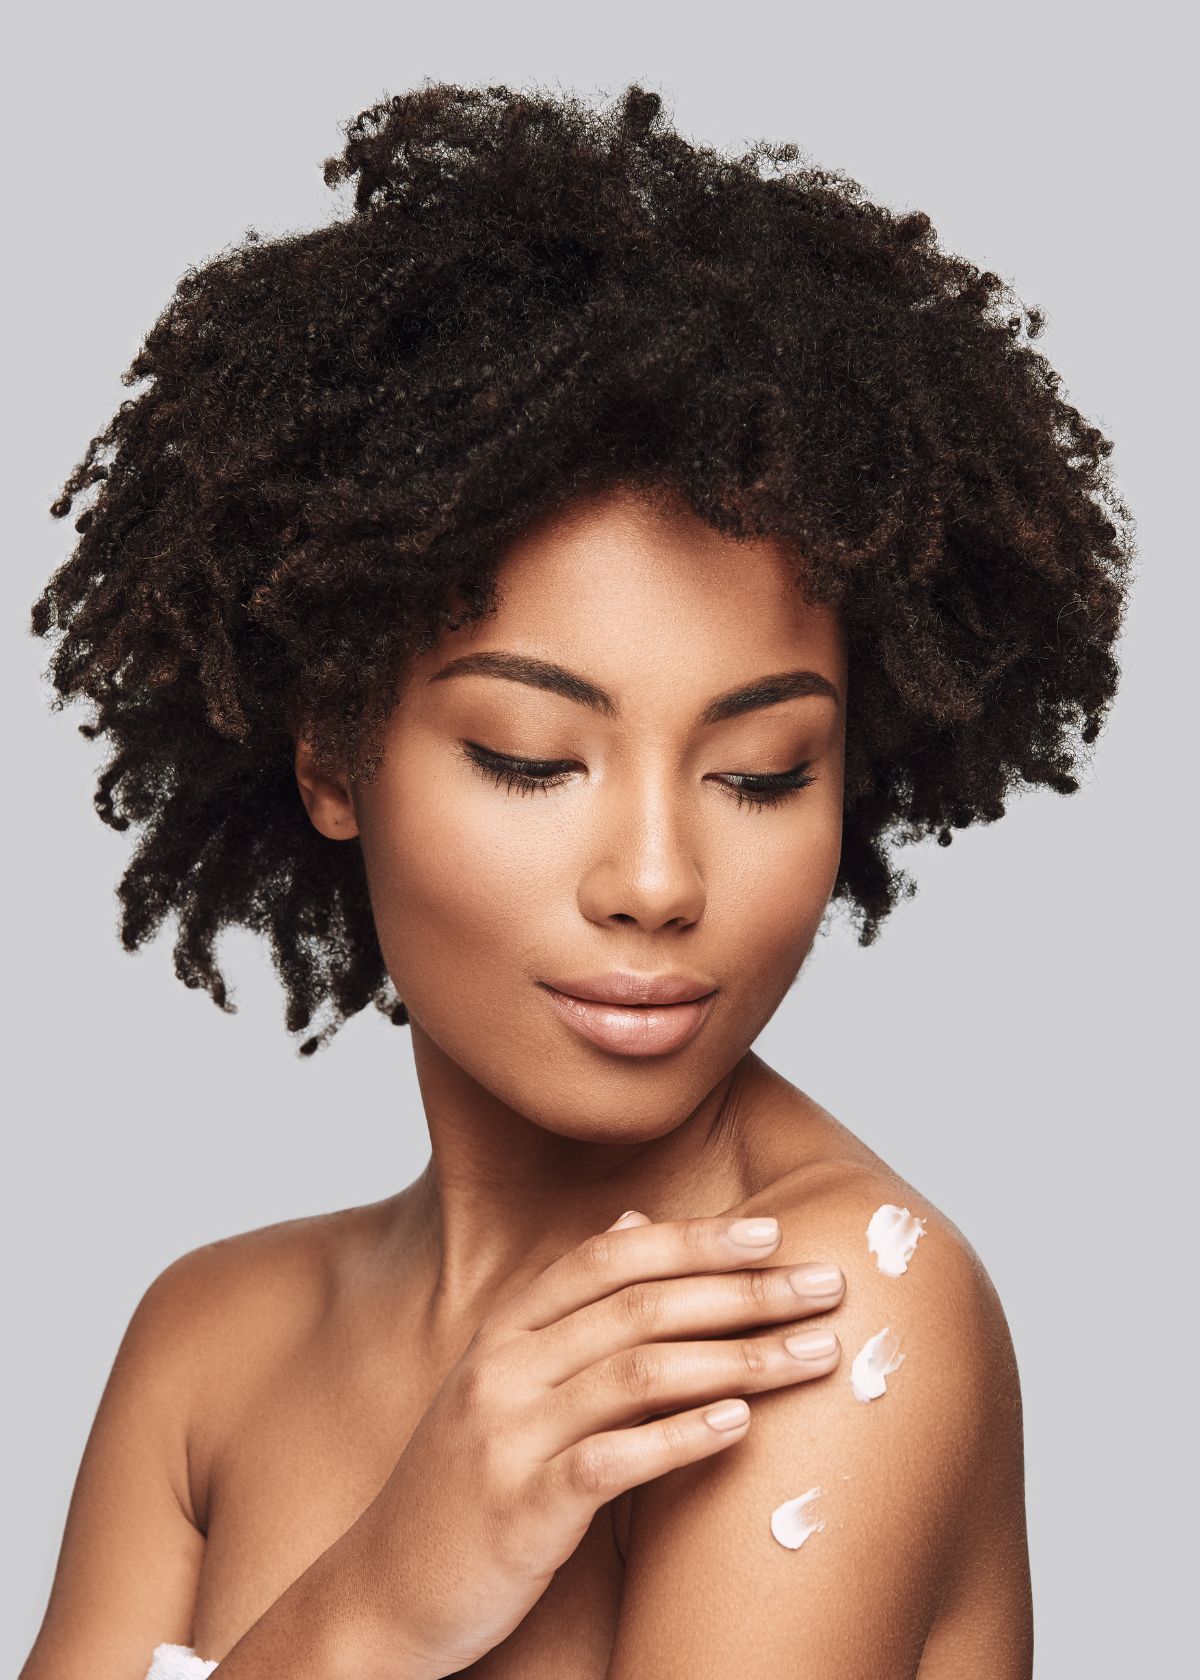 7 Best Bleaching Cream for Black Skin: Make You Glow